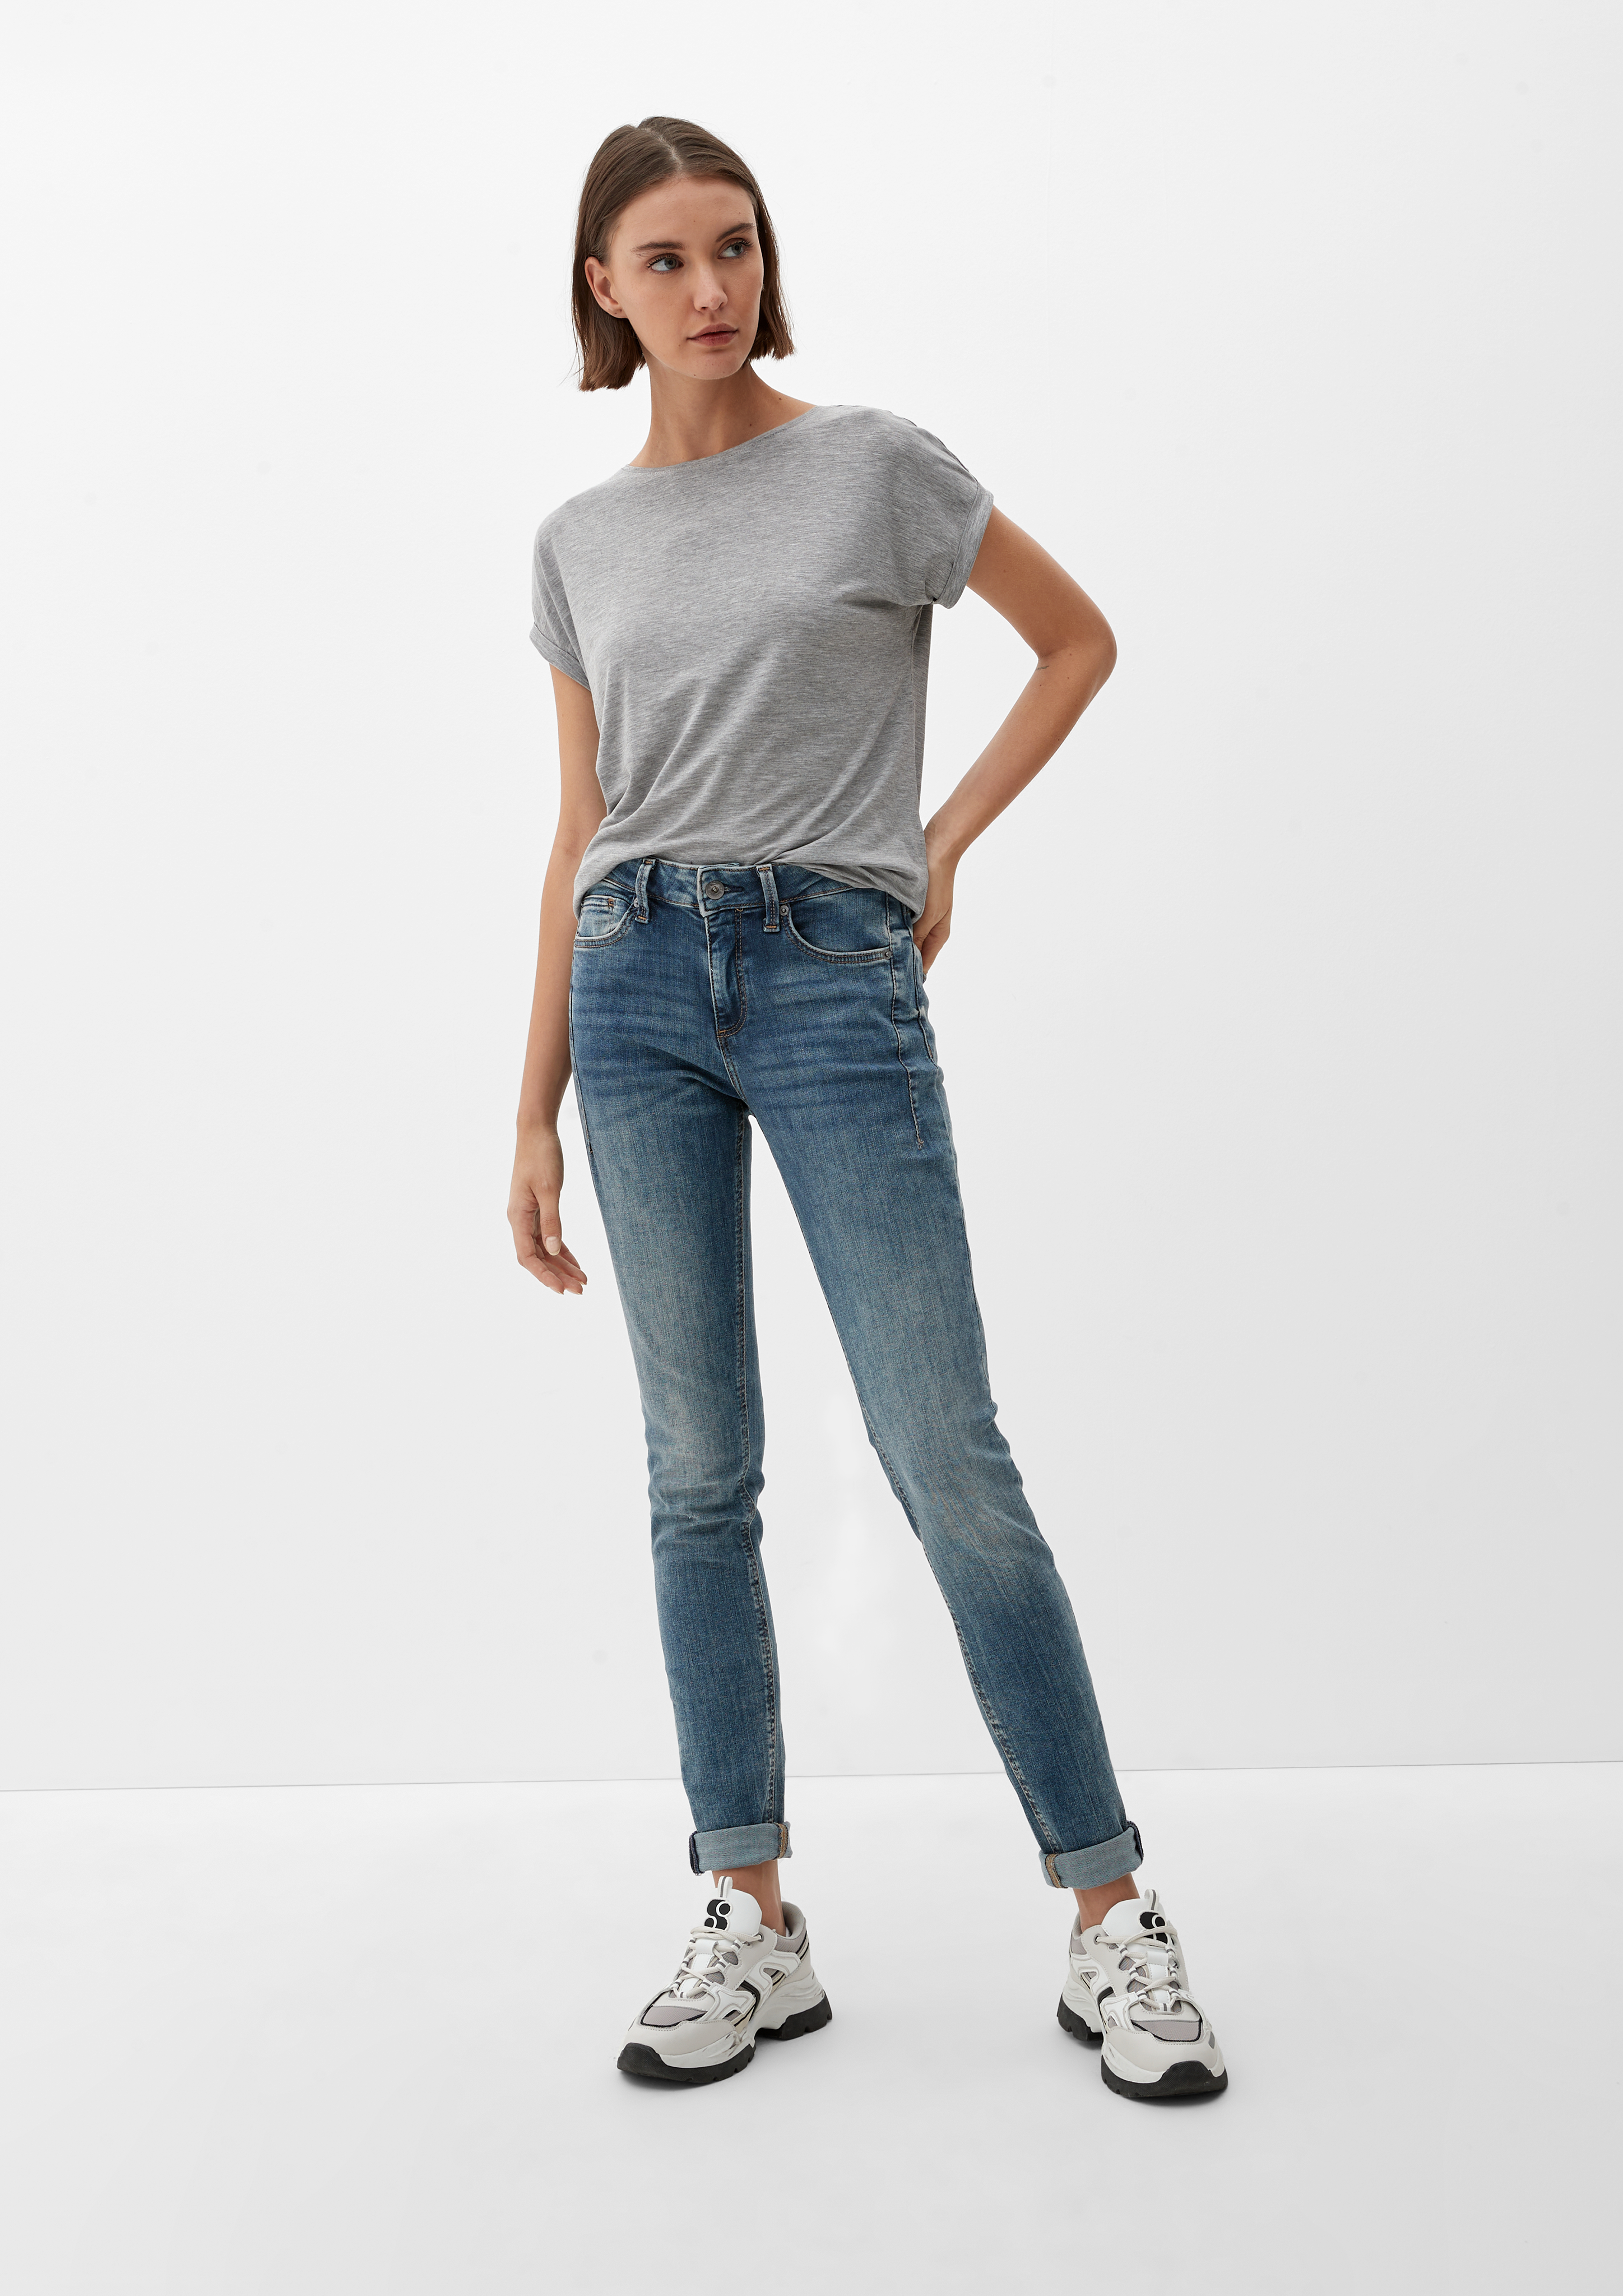 Jeans Sadie / Skinny Rise Fit / - Skinny / ozeanblau Mid Leg